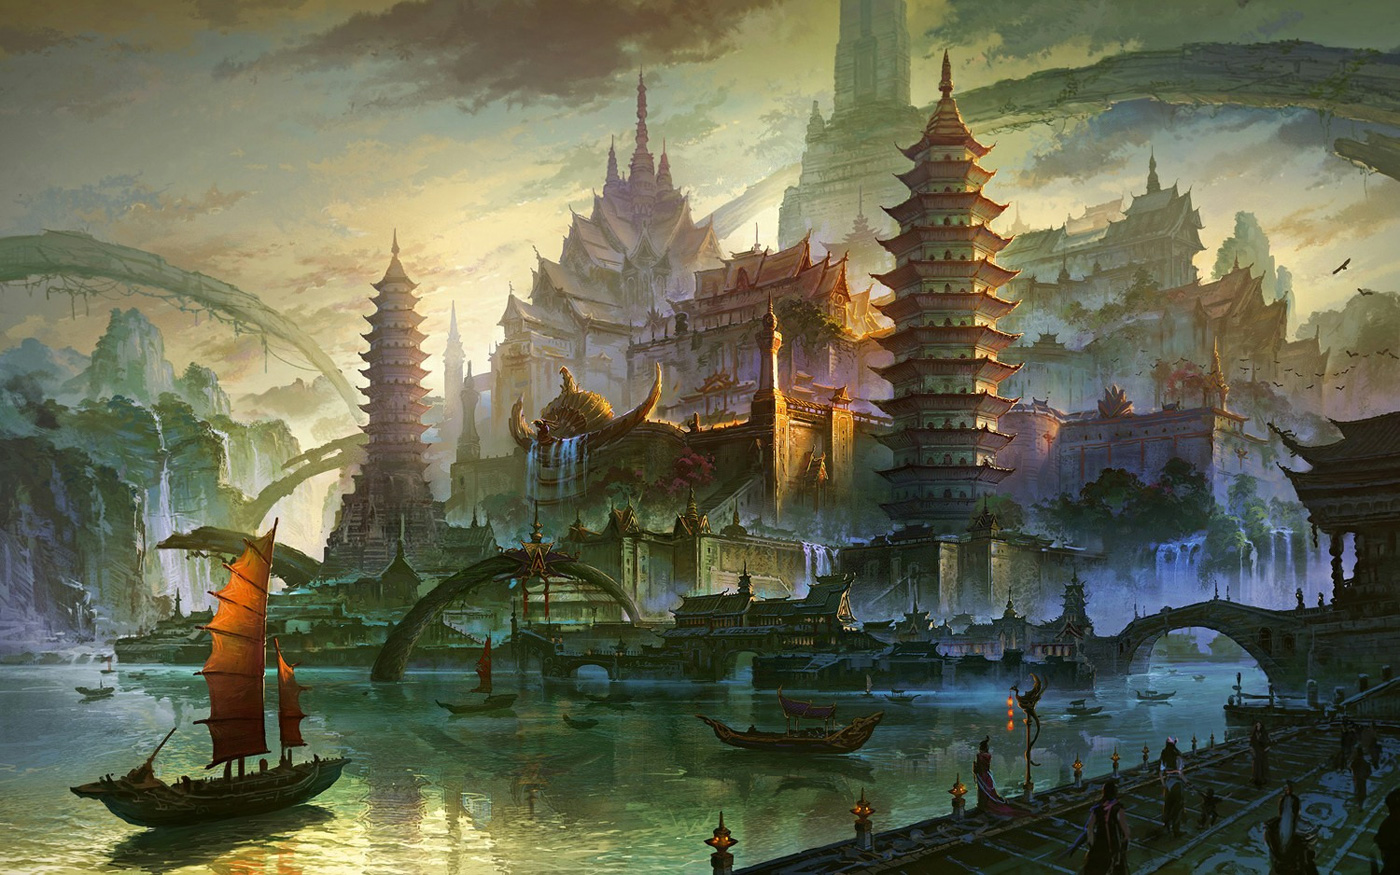 Les environnements spectaculaires en digital painting de Fan Ming